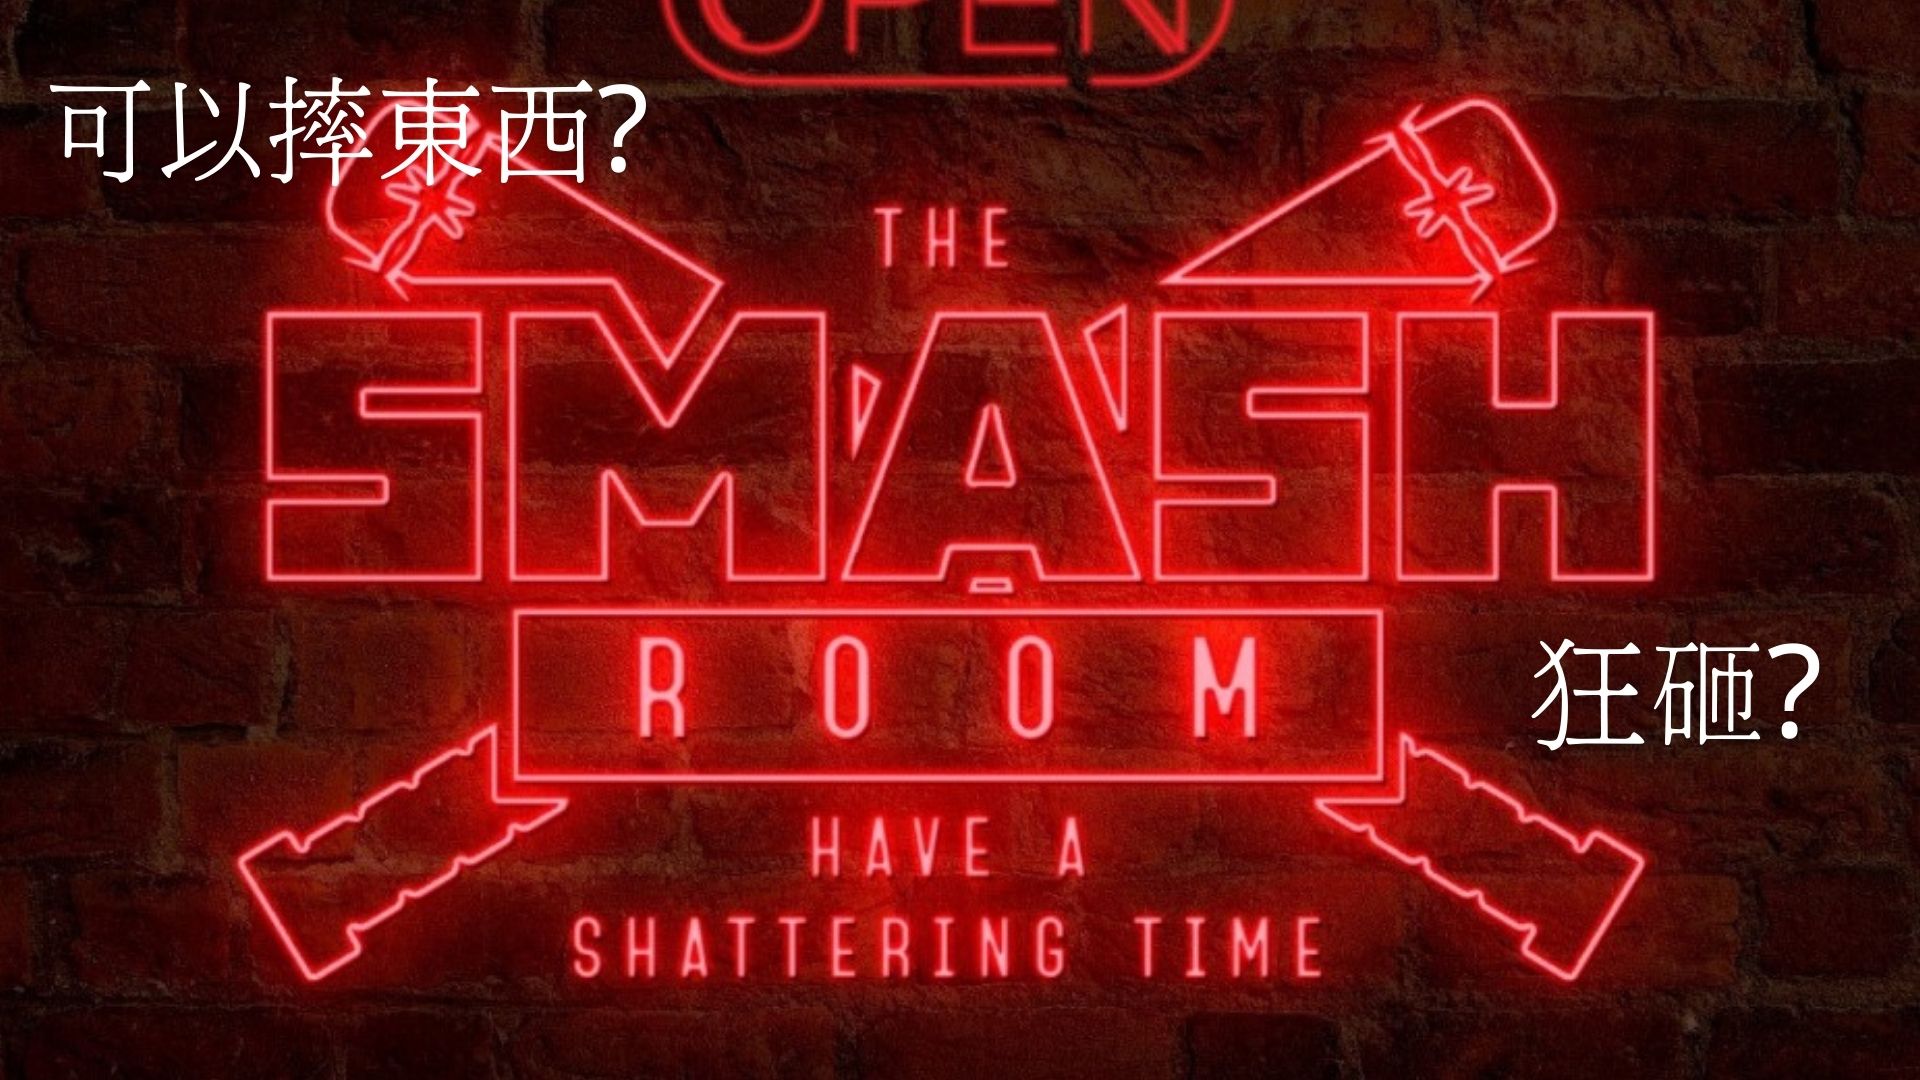 【杜拜】The smash room/在一個大家看不到的地方盡情的發洩情緒！